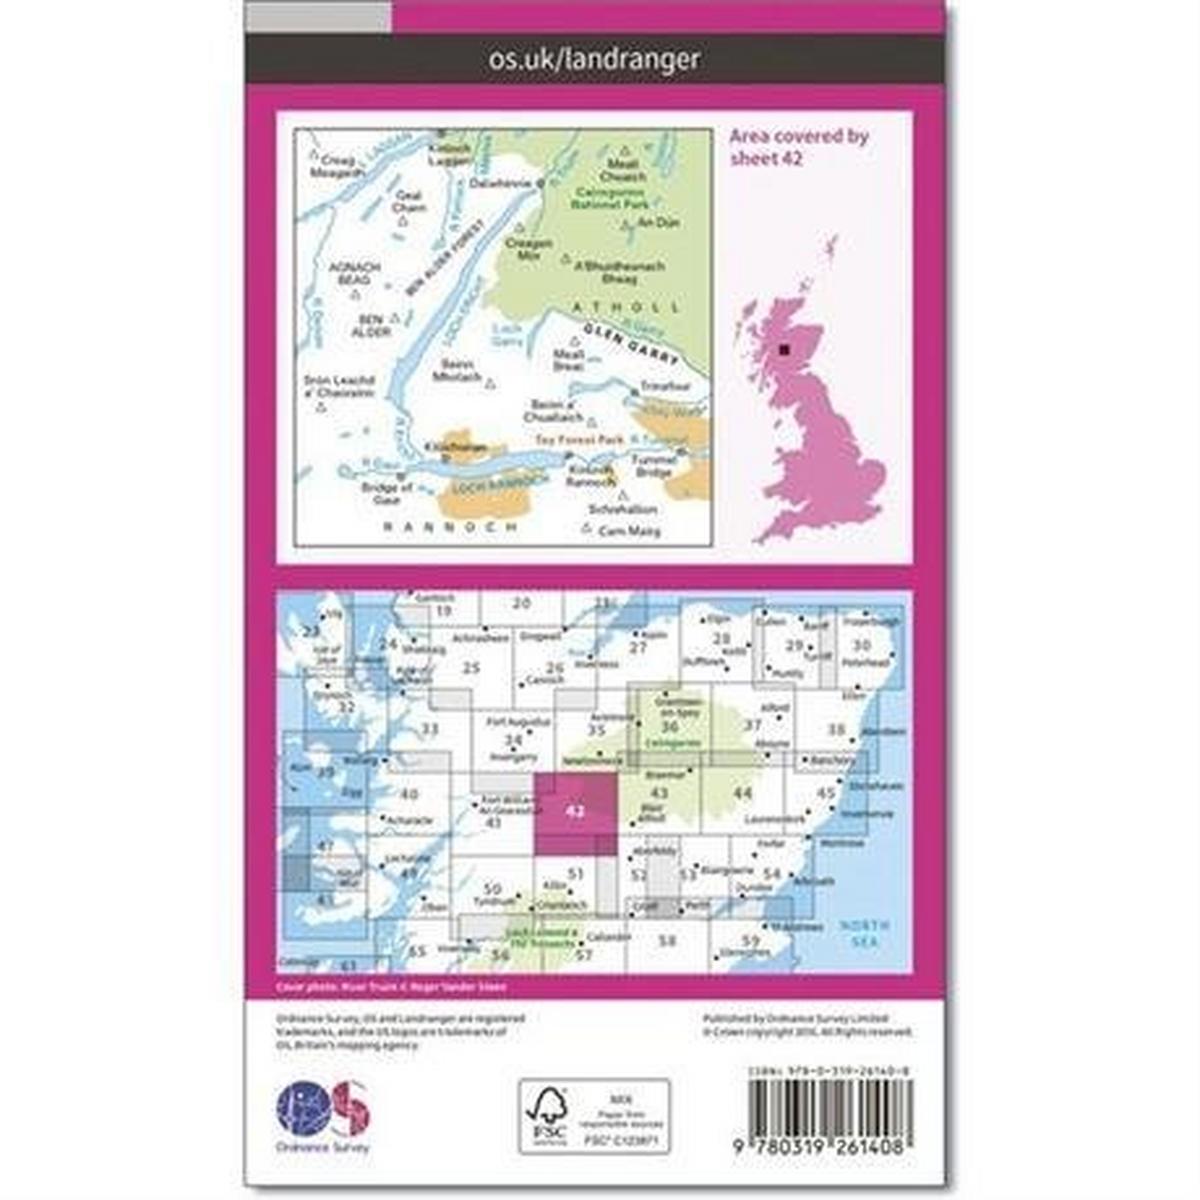 Ordnance Survey OS Landranger Map 42 Glen Garry & Loch Rannoch